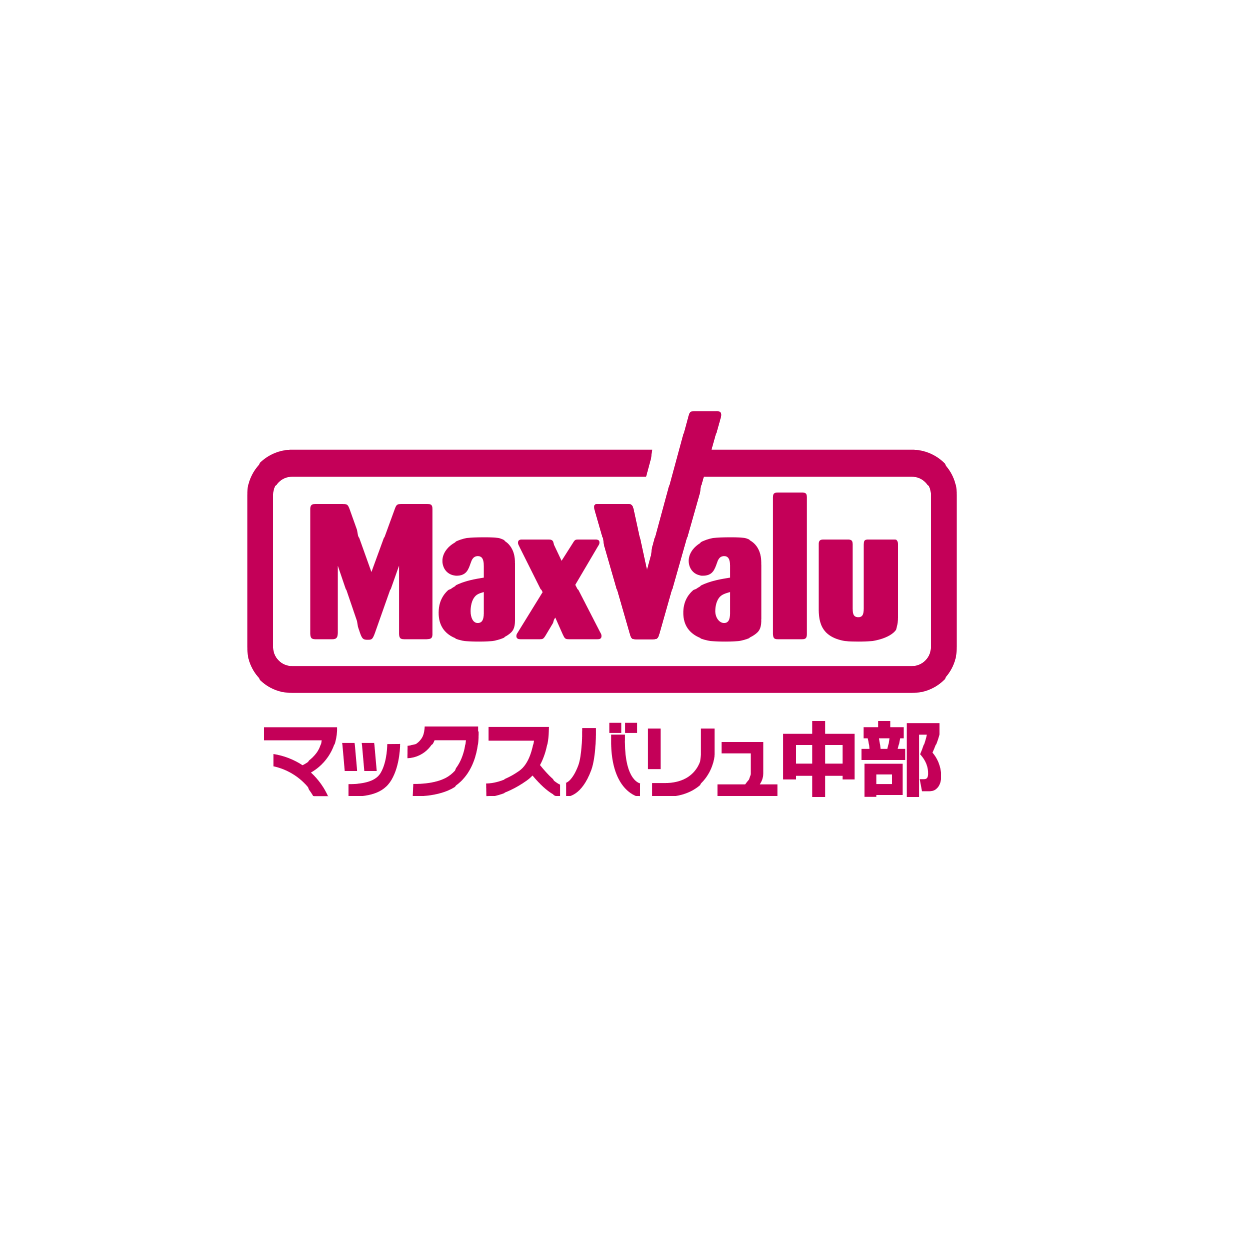 Max Valu